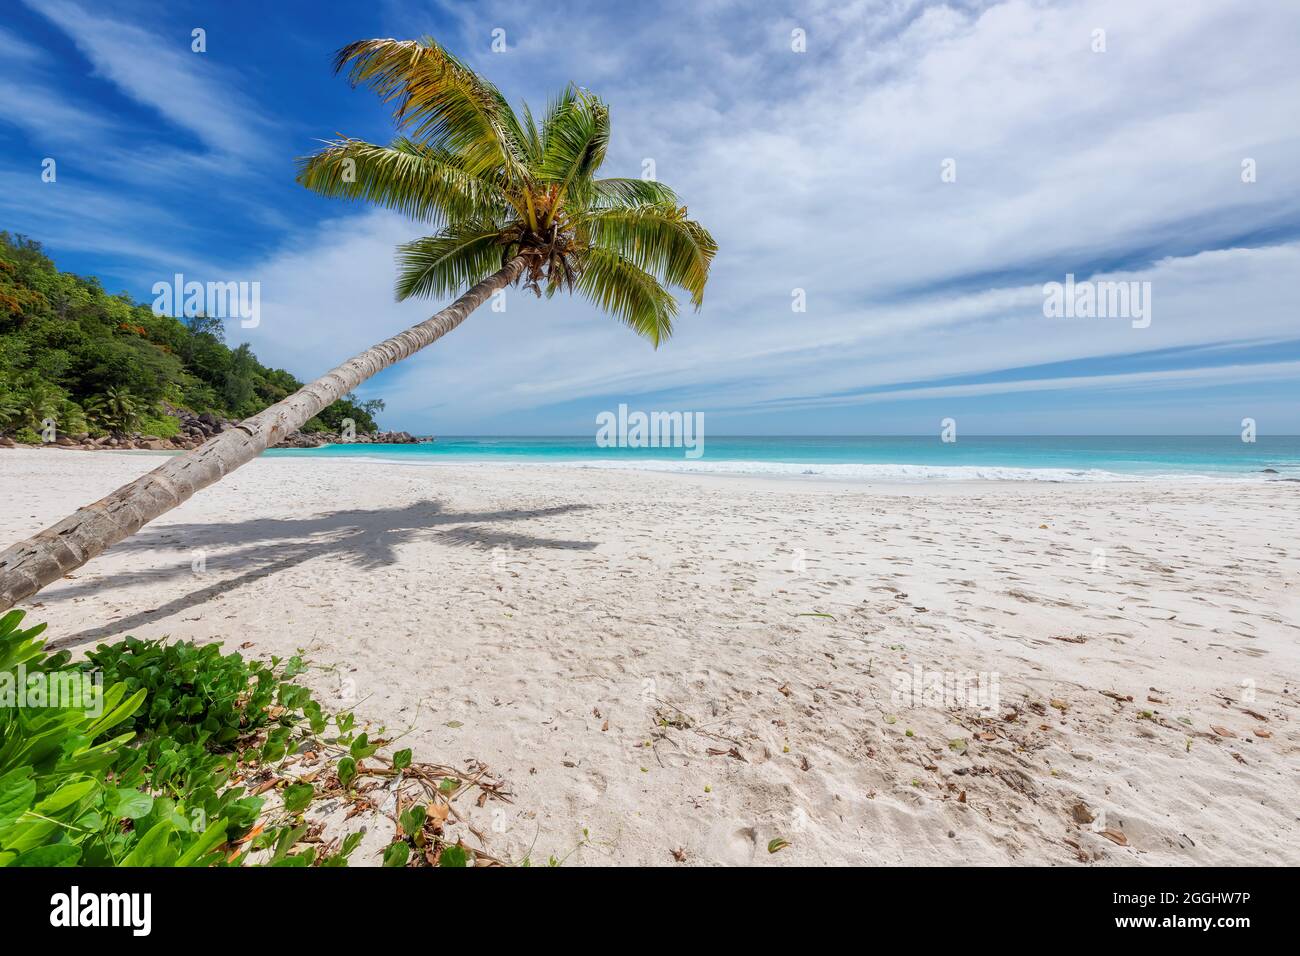 Coco palme sulla spiaggia tropicale di sabbia bianca e il mare turchese sull'isola caraibica. Foto Stock